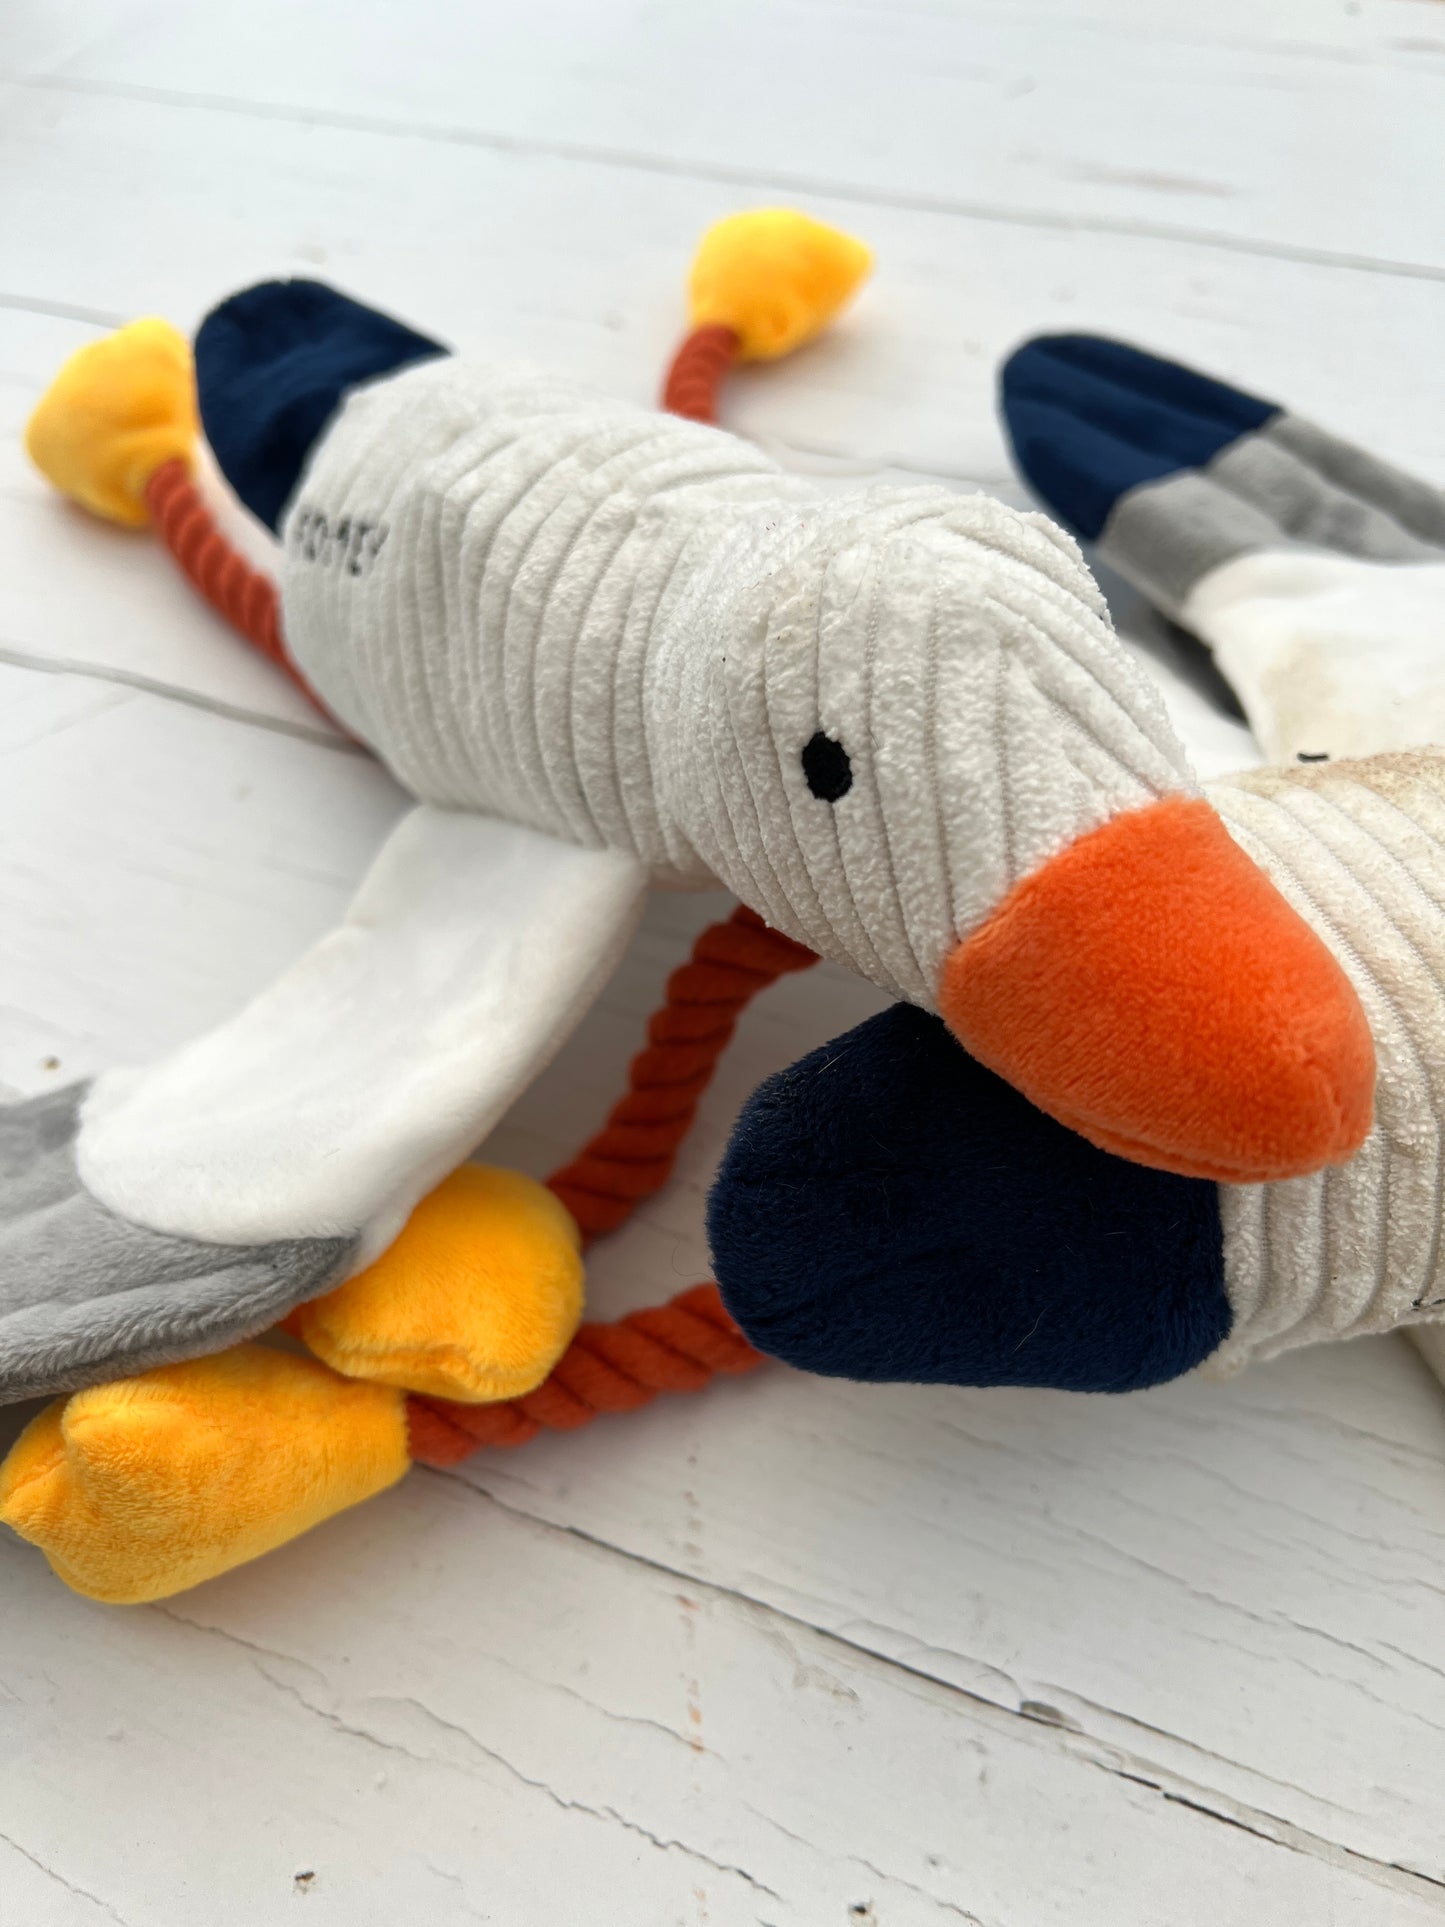 Fowey Seagull Dog Toy